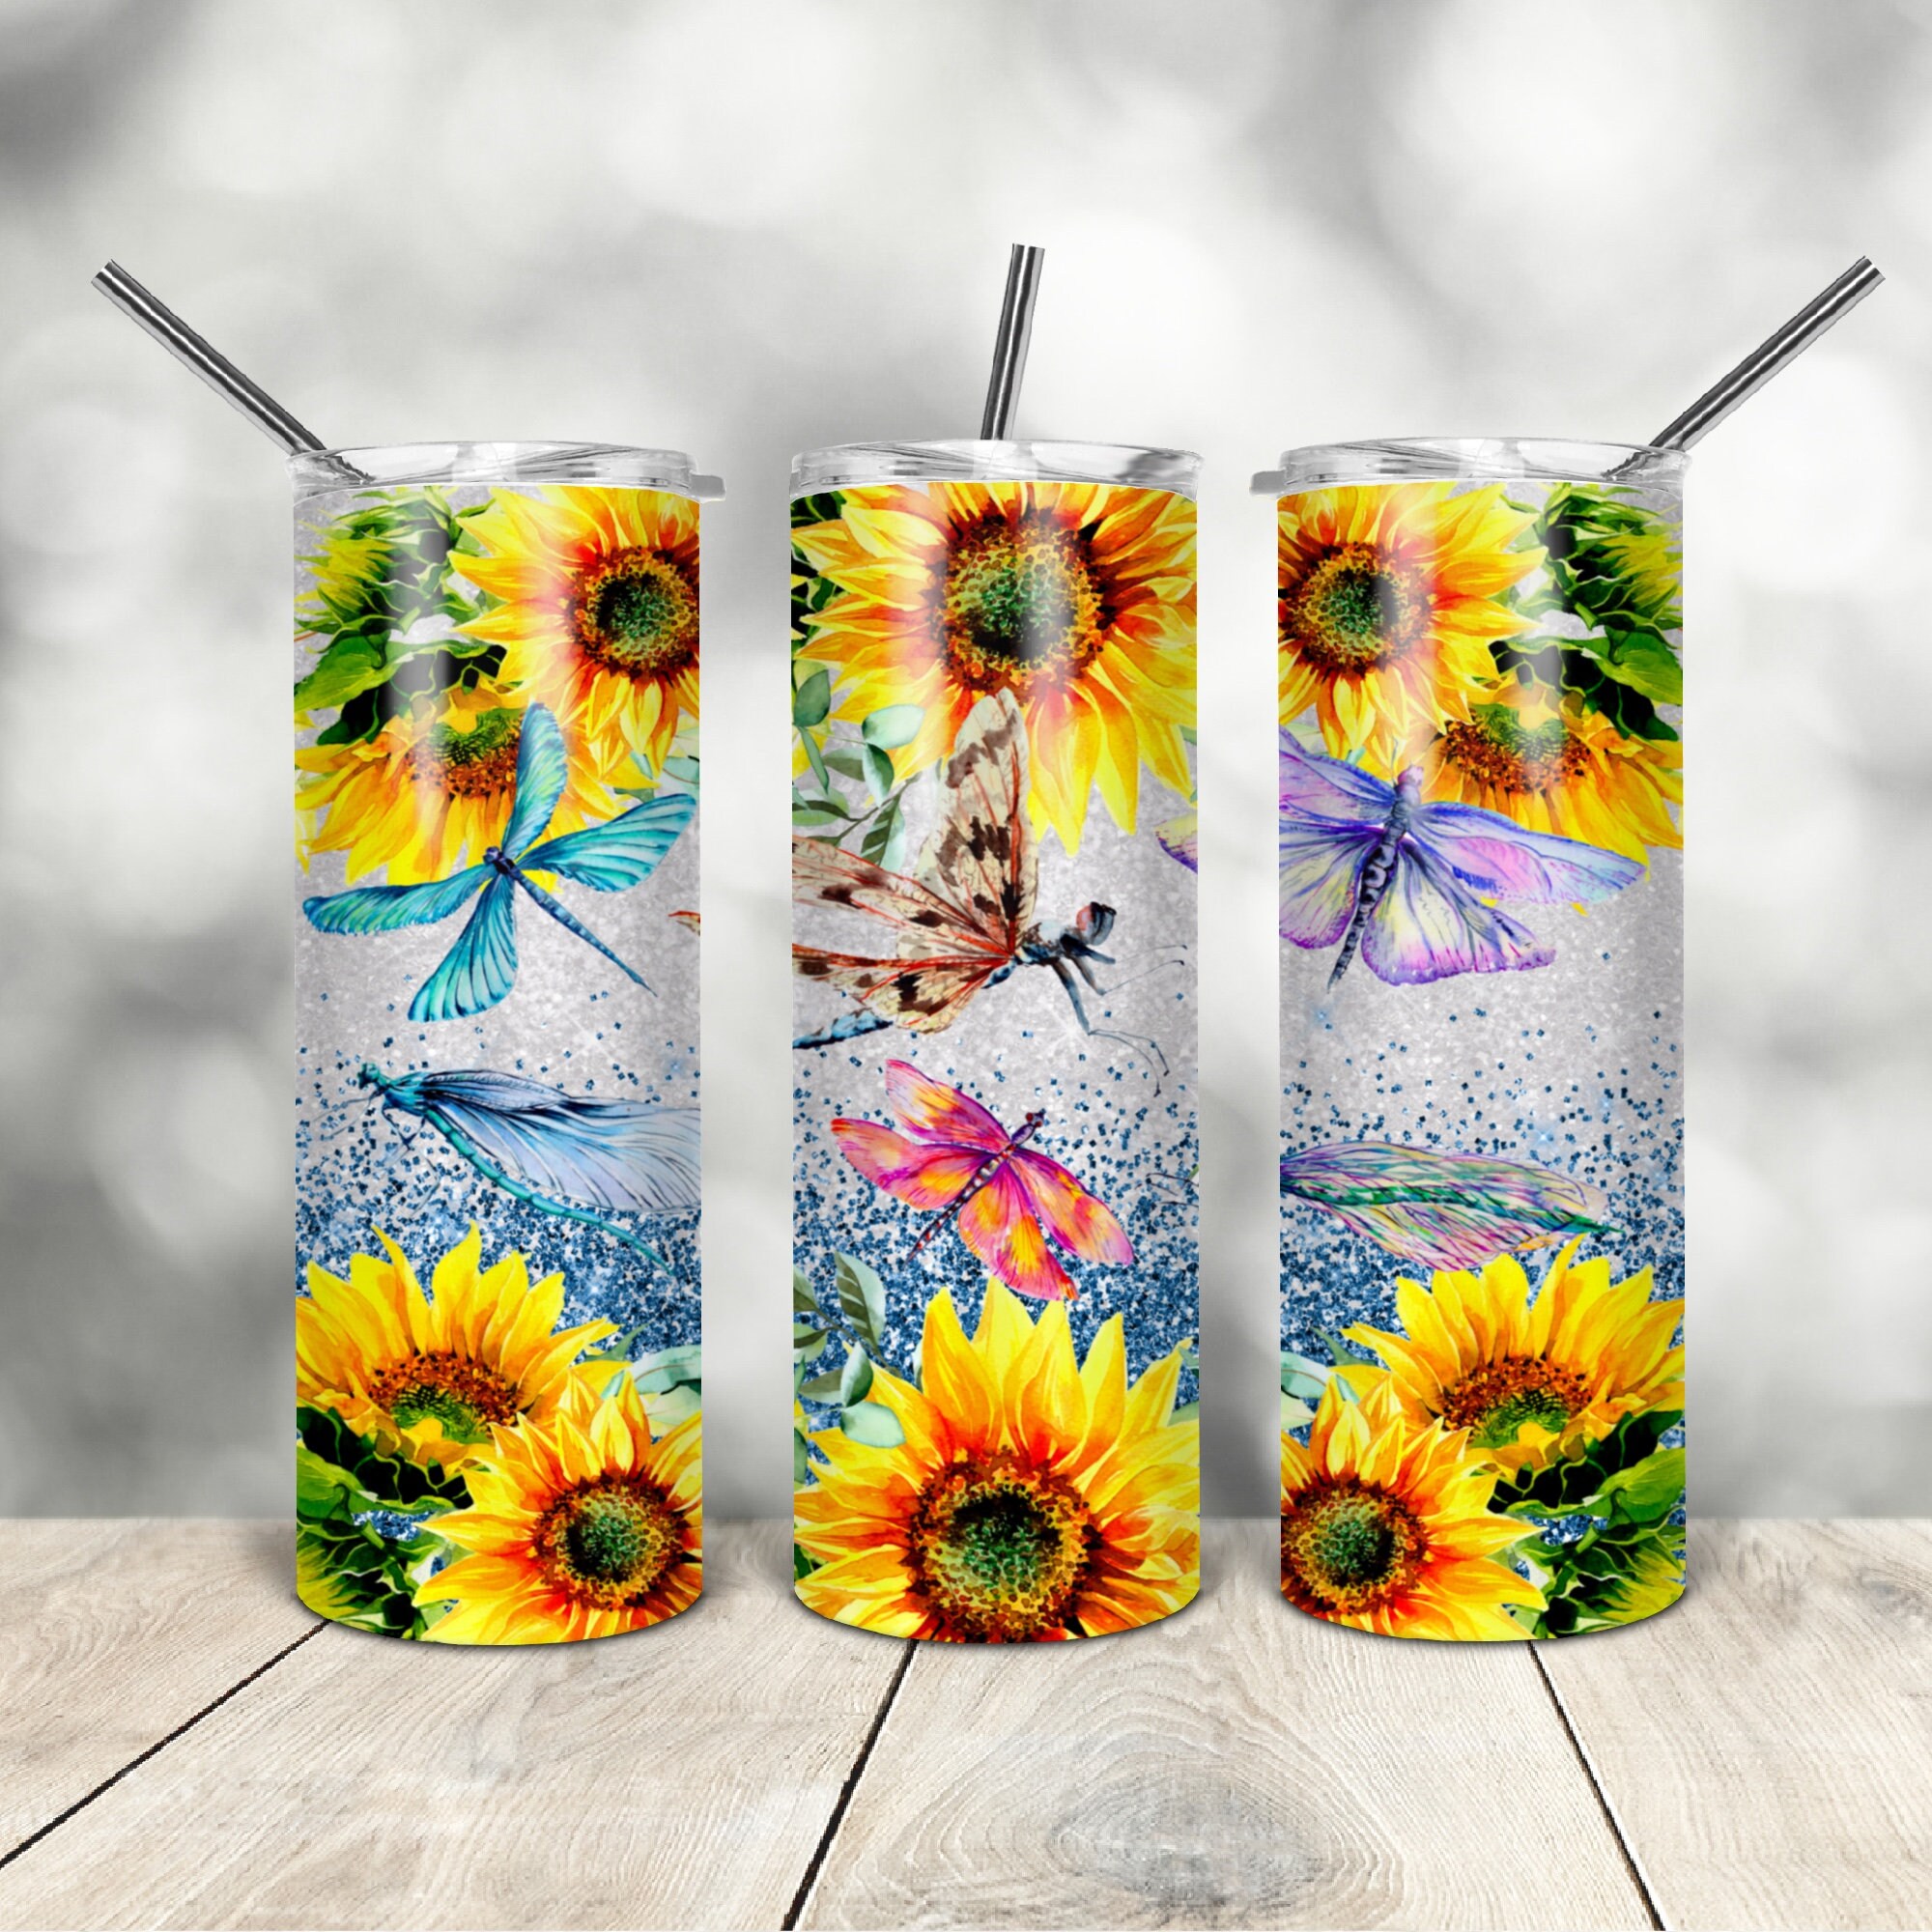 Girl Who Loves Books Sunflower Custom Glitter Tumbler Cup – Dragonfly  Drinkware & Designs